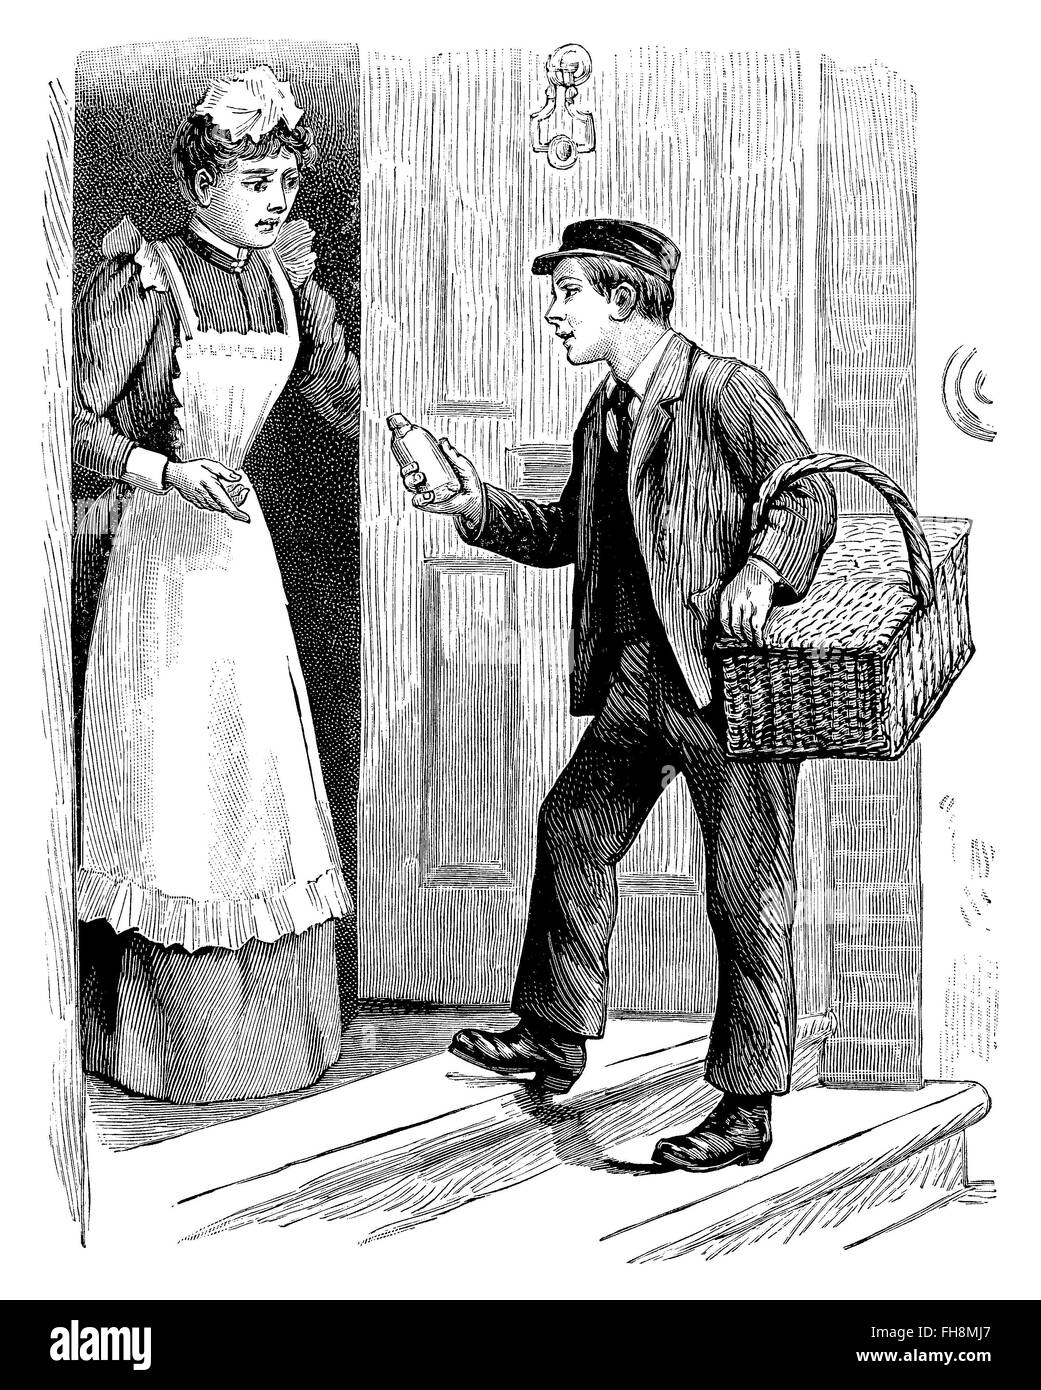 Schwarz / weiß Gravur von viktorianischen oder edwardianischen Bote und ein Hausmädchen in einer Tür stehe. Stockfoto